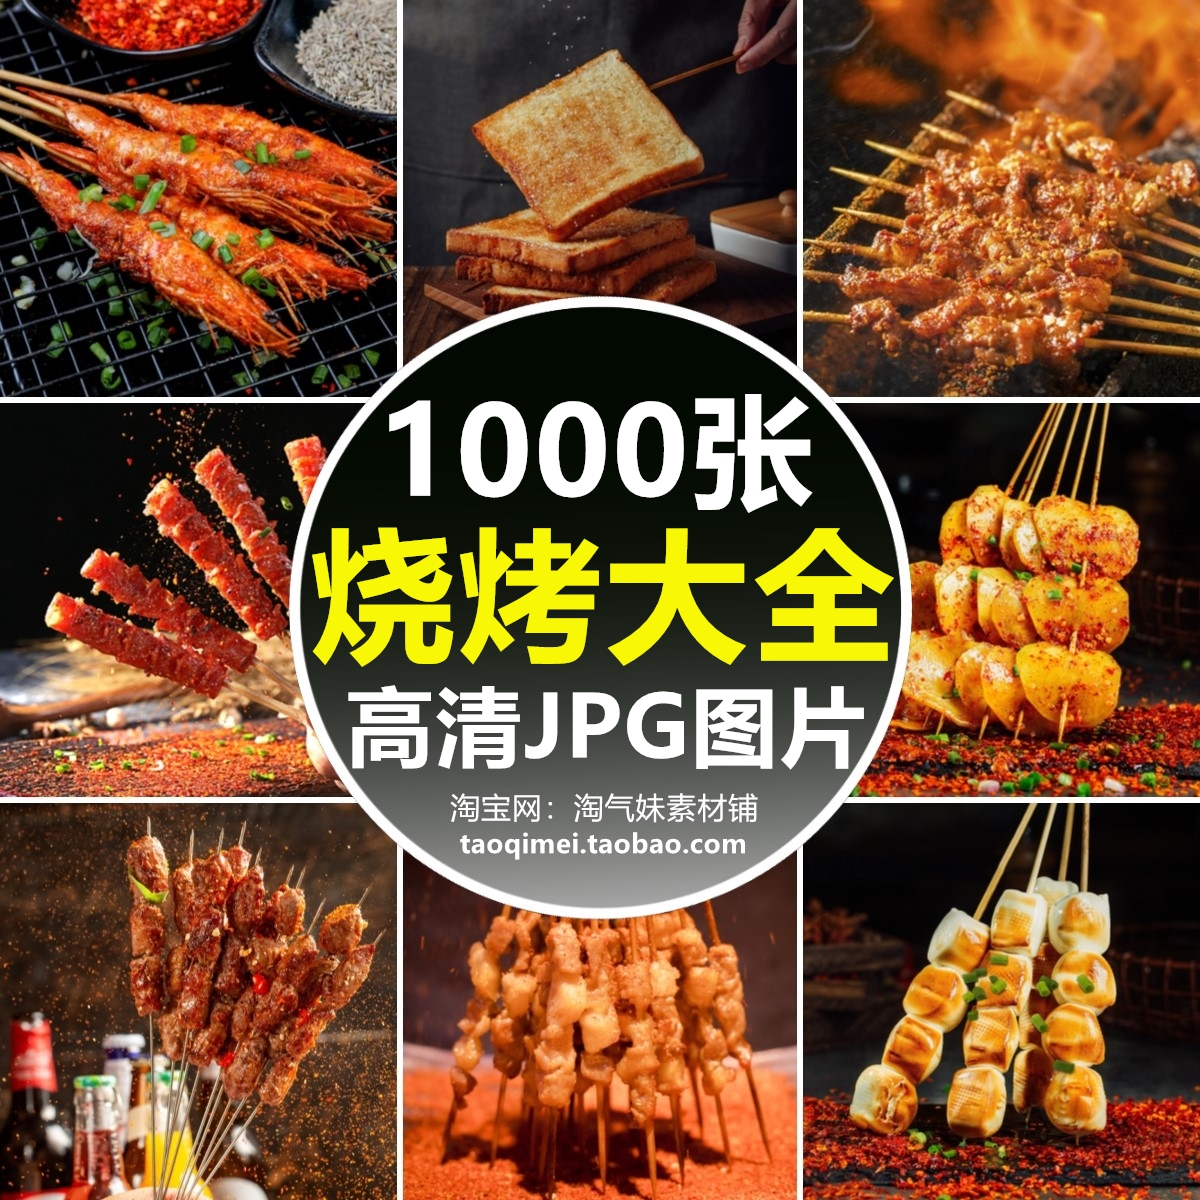 高清JPG烧烤图片烤肉串板筋烤鱼烤虾餐饮店菜单背景海报设计素材